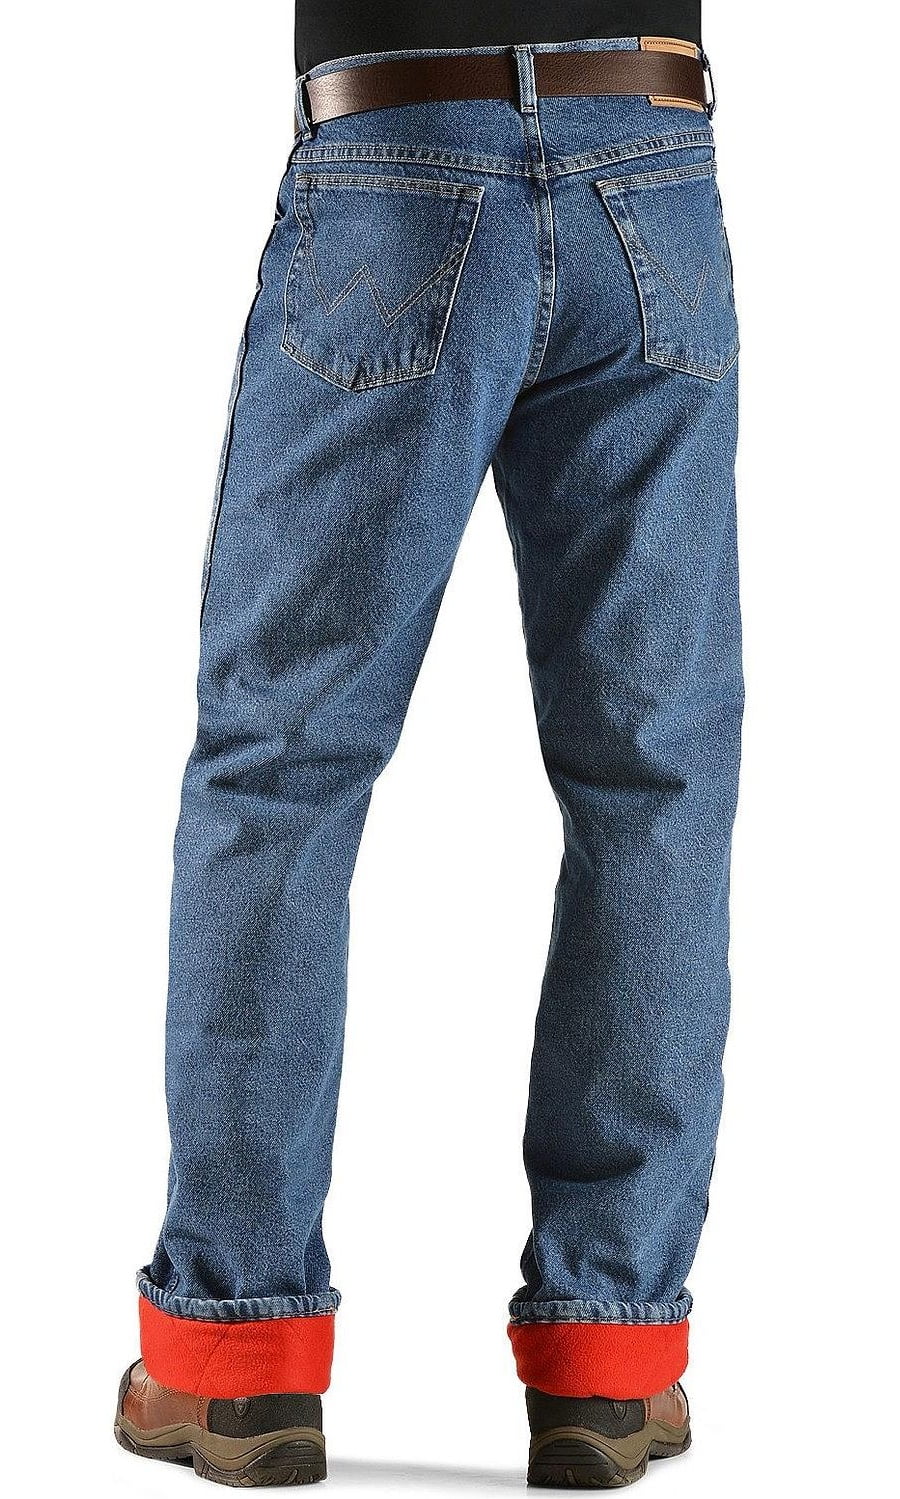 fleece lined jeans walmart